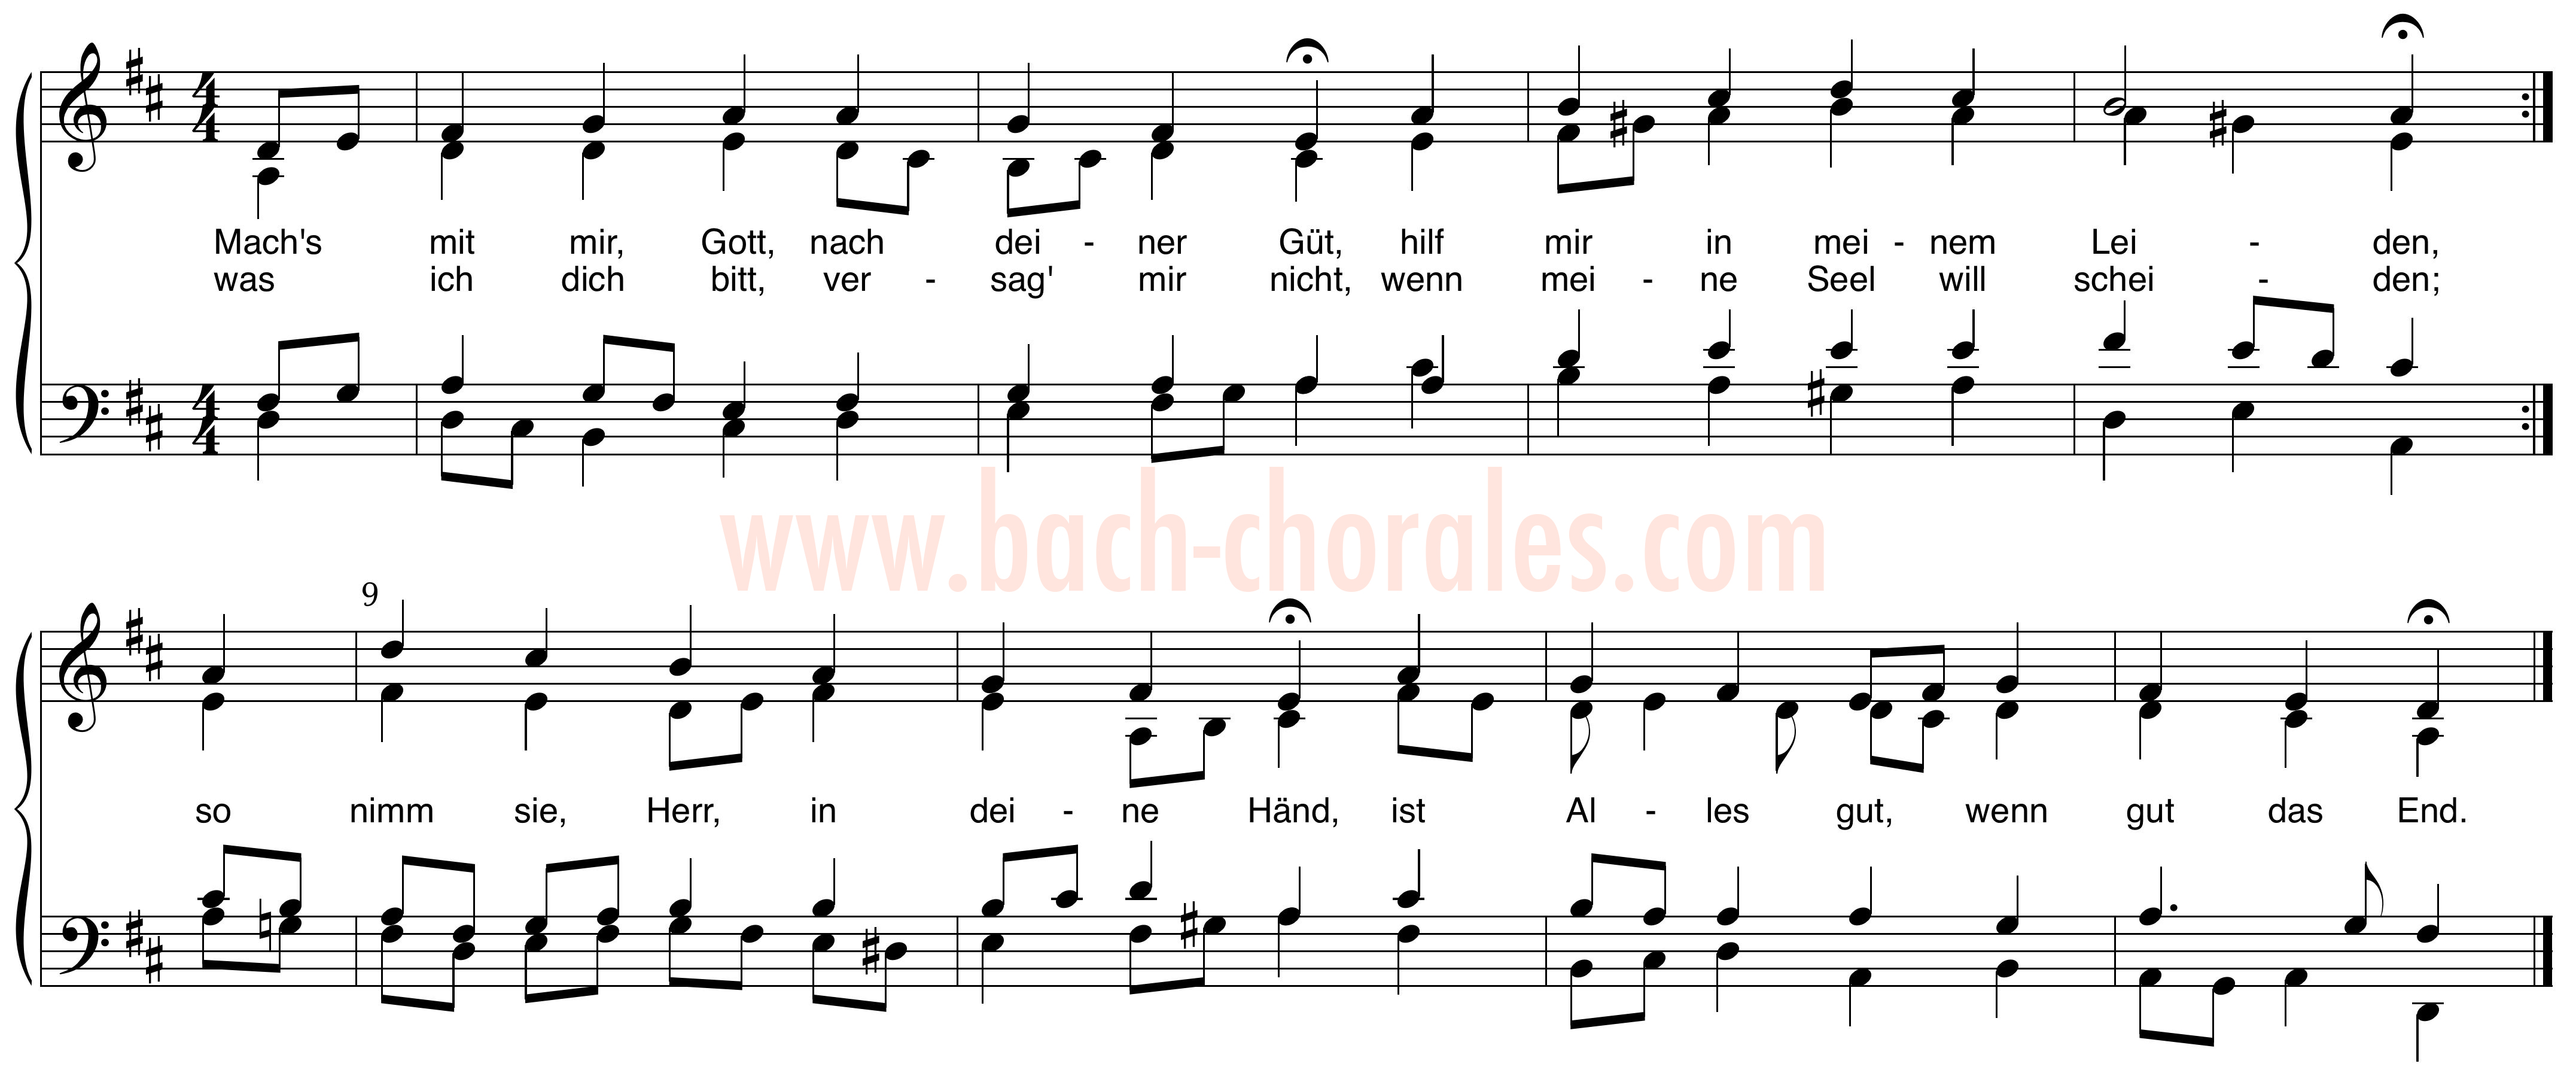 notenbeeld BWV 377 op https://www.bach-chorales.com/